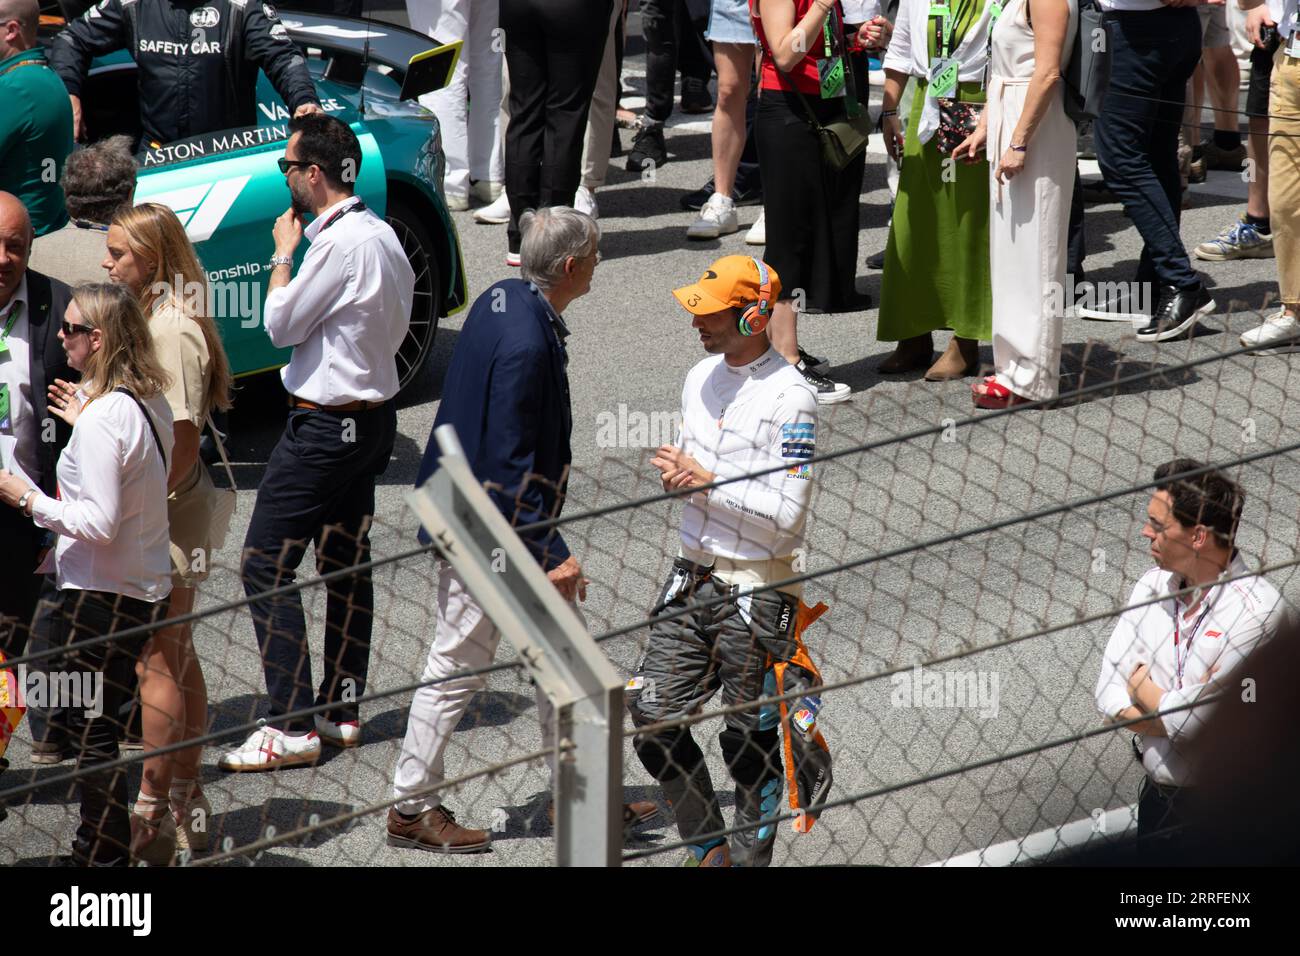 Der F1-Fahrer Daniel Ricciardo wurde vor dem Rennen aufgenommen und sieht sich mit angeschalteten Kopfhörern lässig spazieren. Ein Publikum im Hintergrund trägt zum atm vor dem Rennen bei Stockfoto